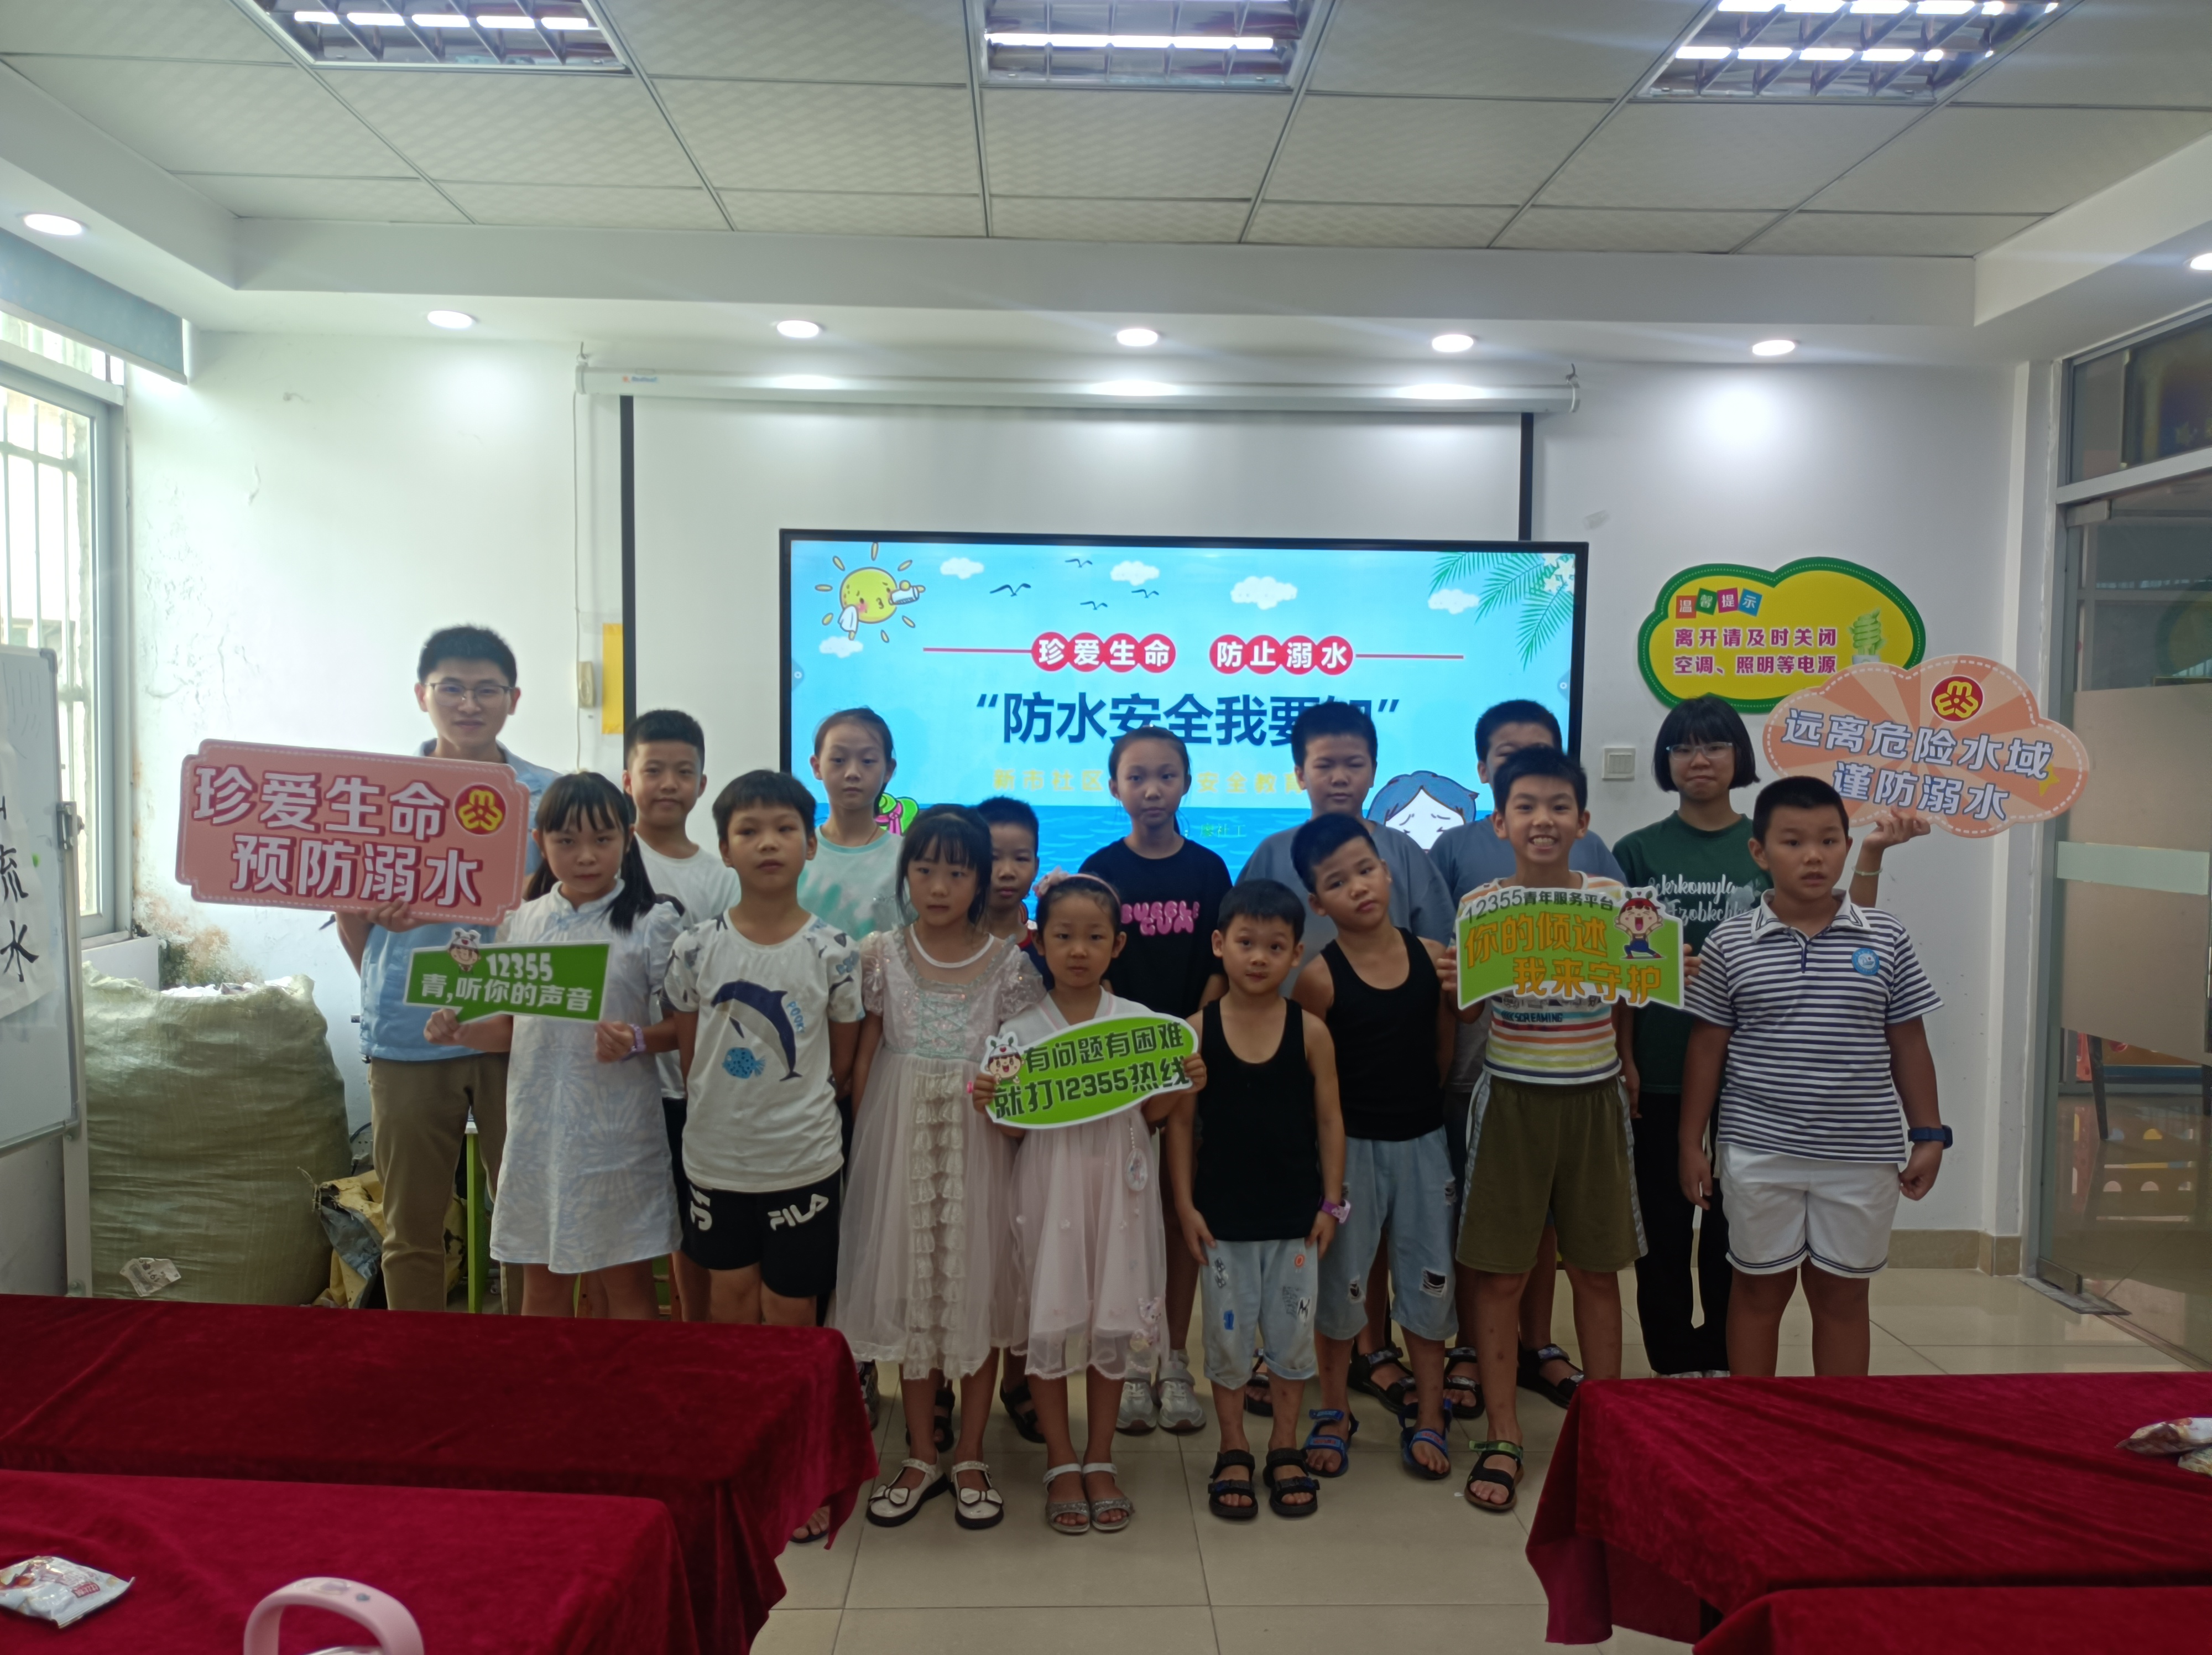 黄江梅塘社区开展“寻红色精神”团队建设体验活动